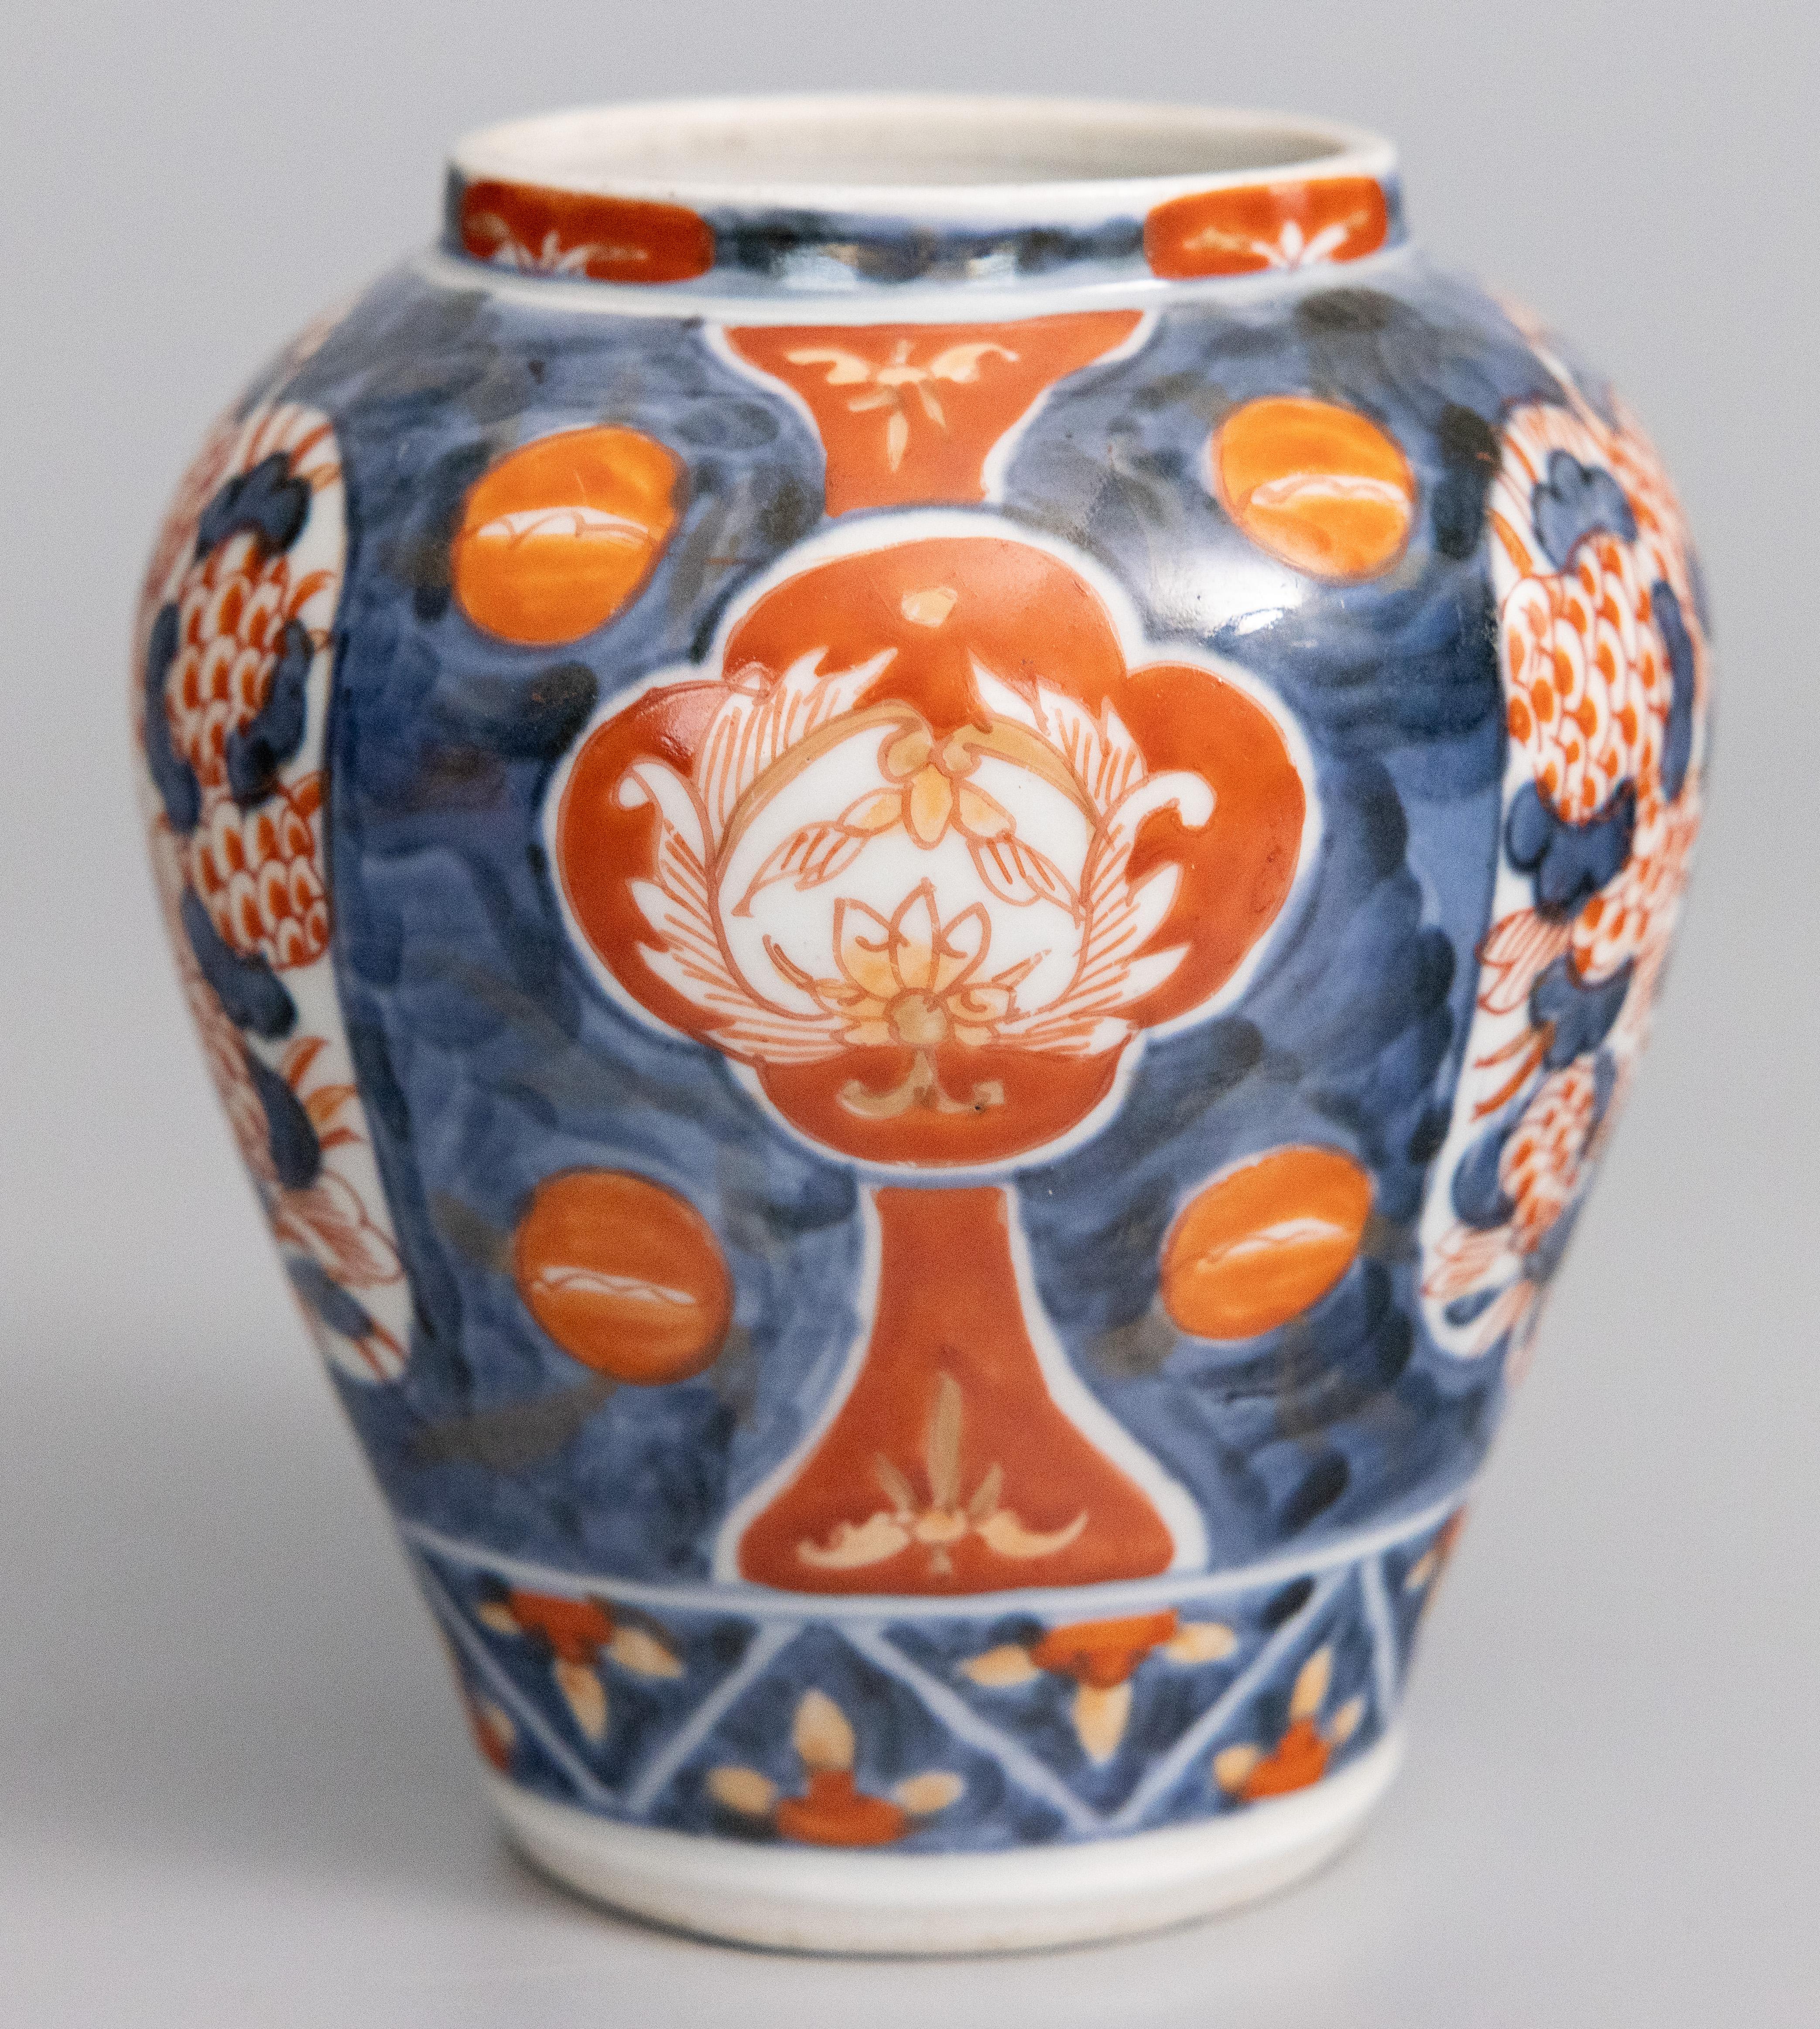 Vase/pot à brosse en porcelaine japonaise Imari du XIXe siècle. Ce vase fin a une forme charmante et des motifs floraux peints à la main dans les couleurs traditionnelles d'Imari.